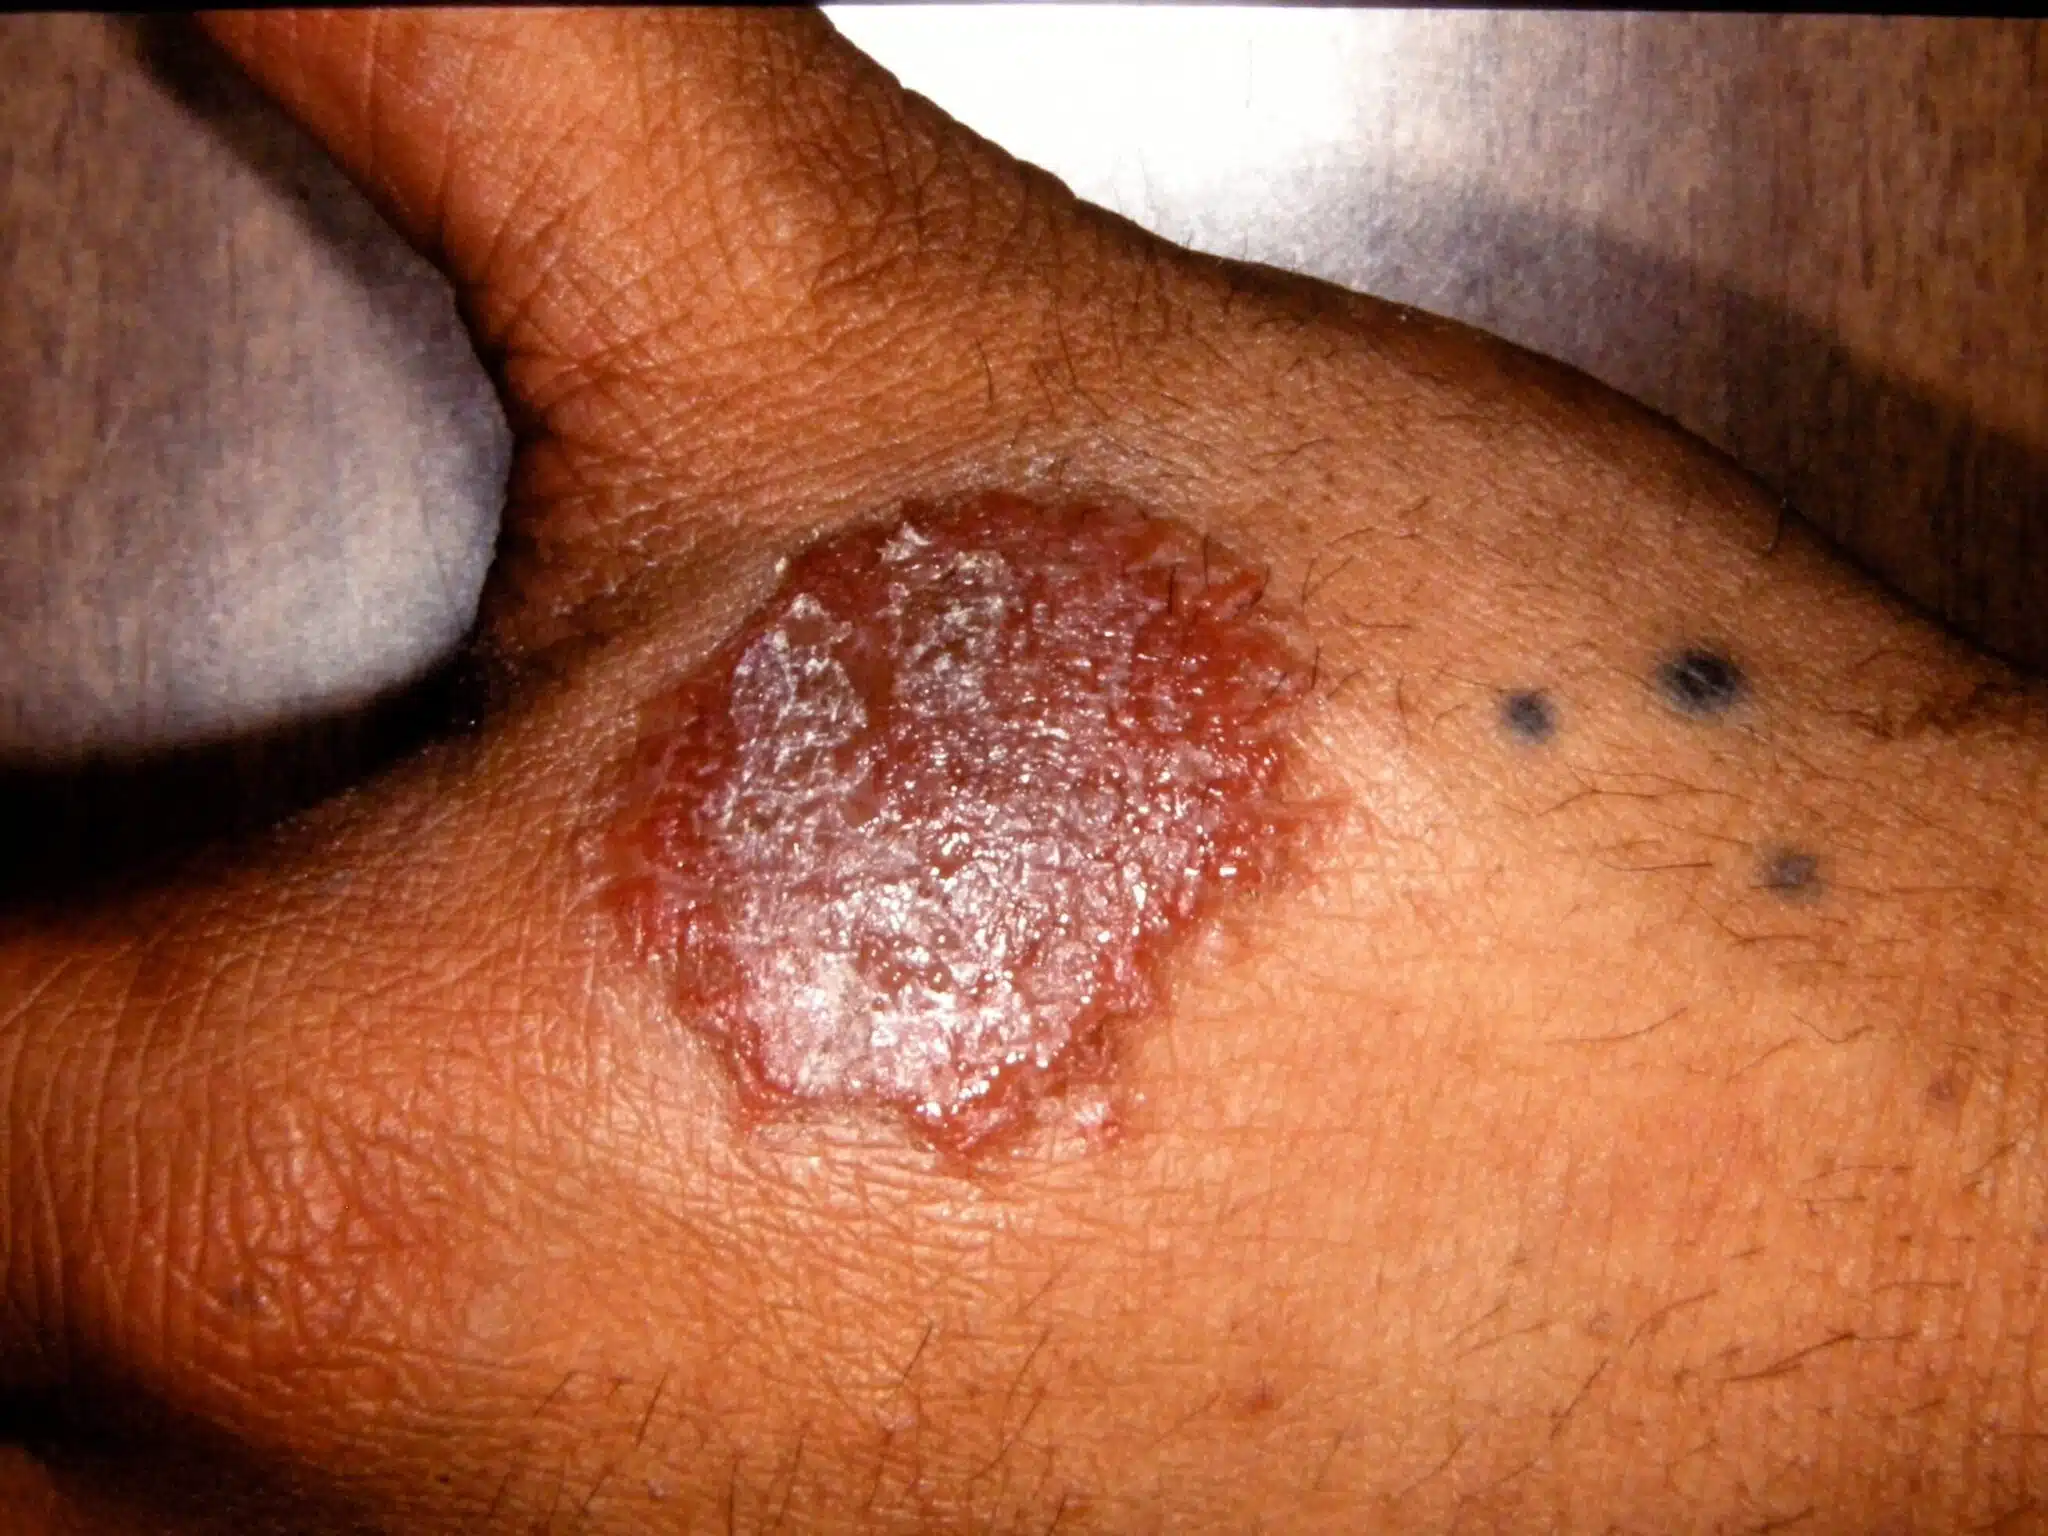 How do you explain this chronic, malodorous rash?